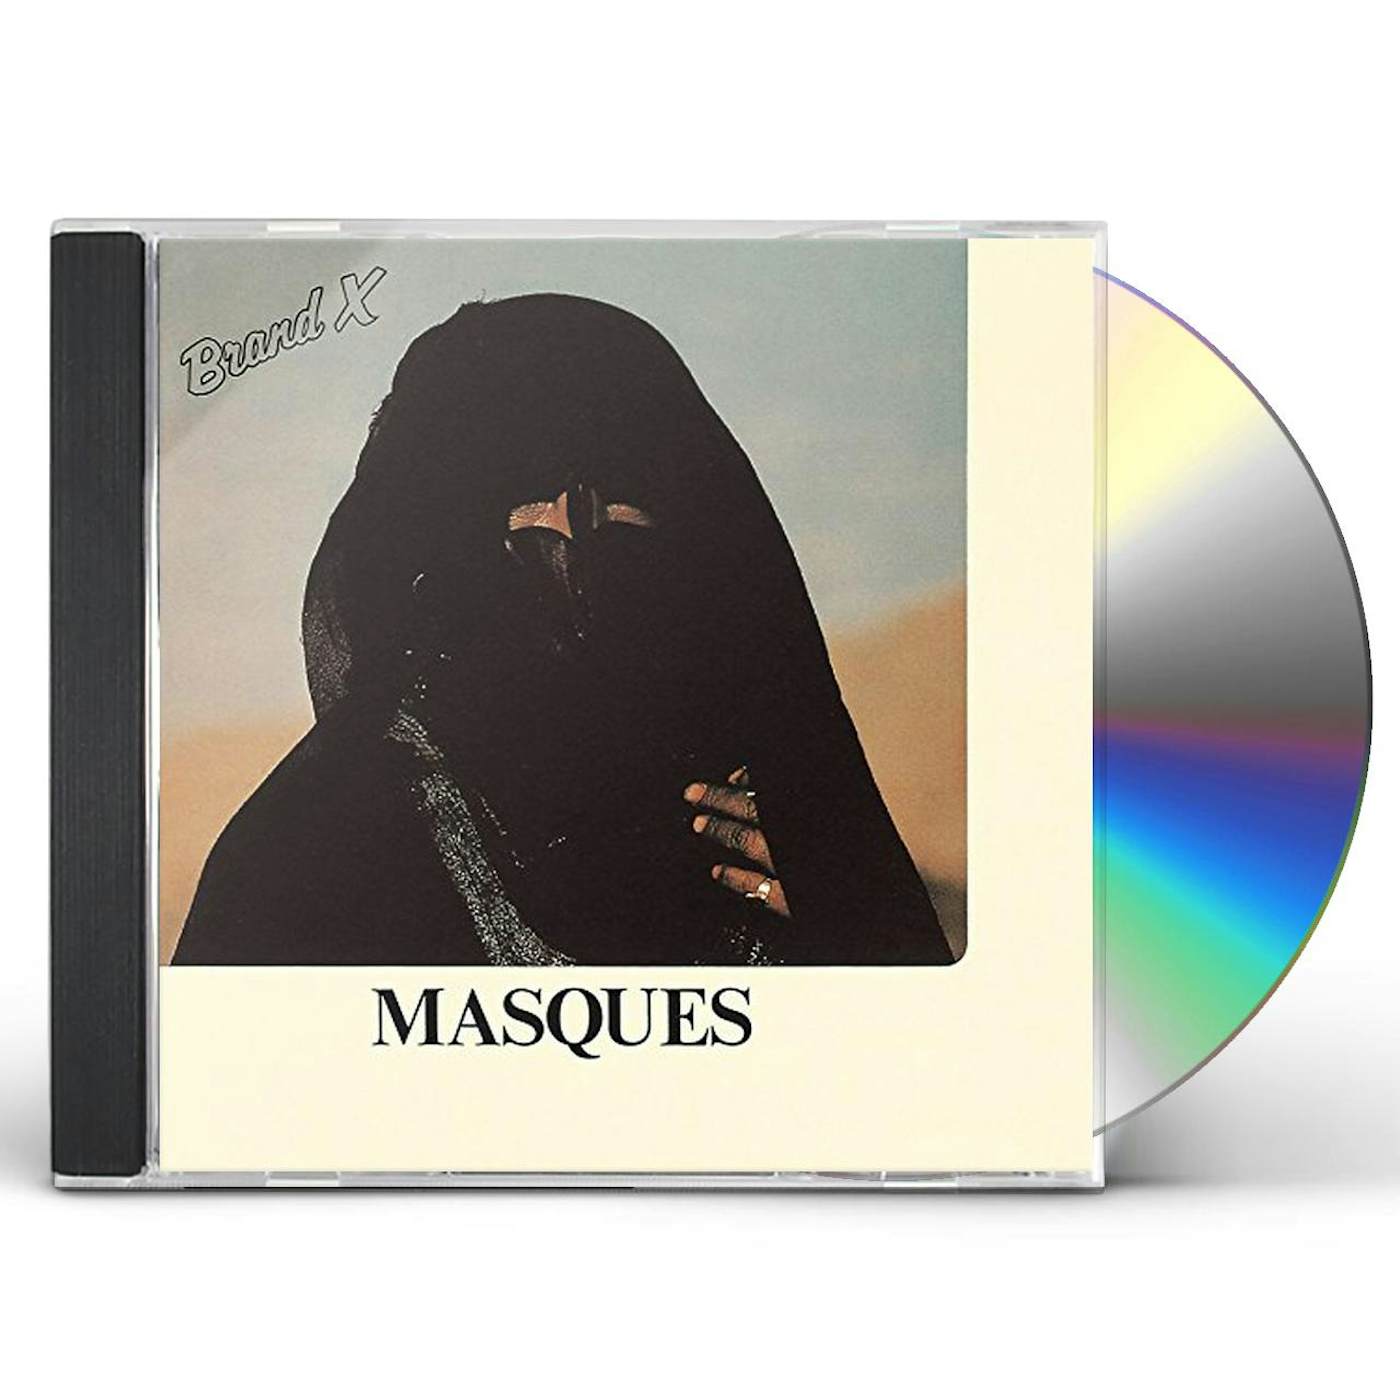 Brand X MASQUES CD